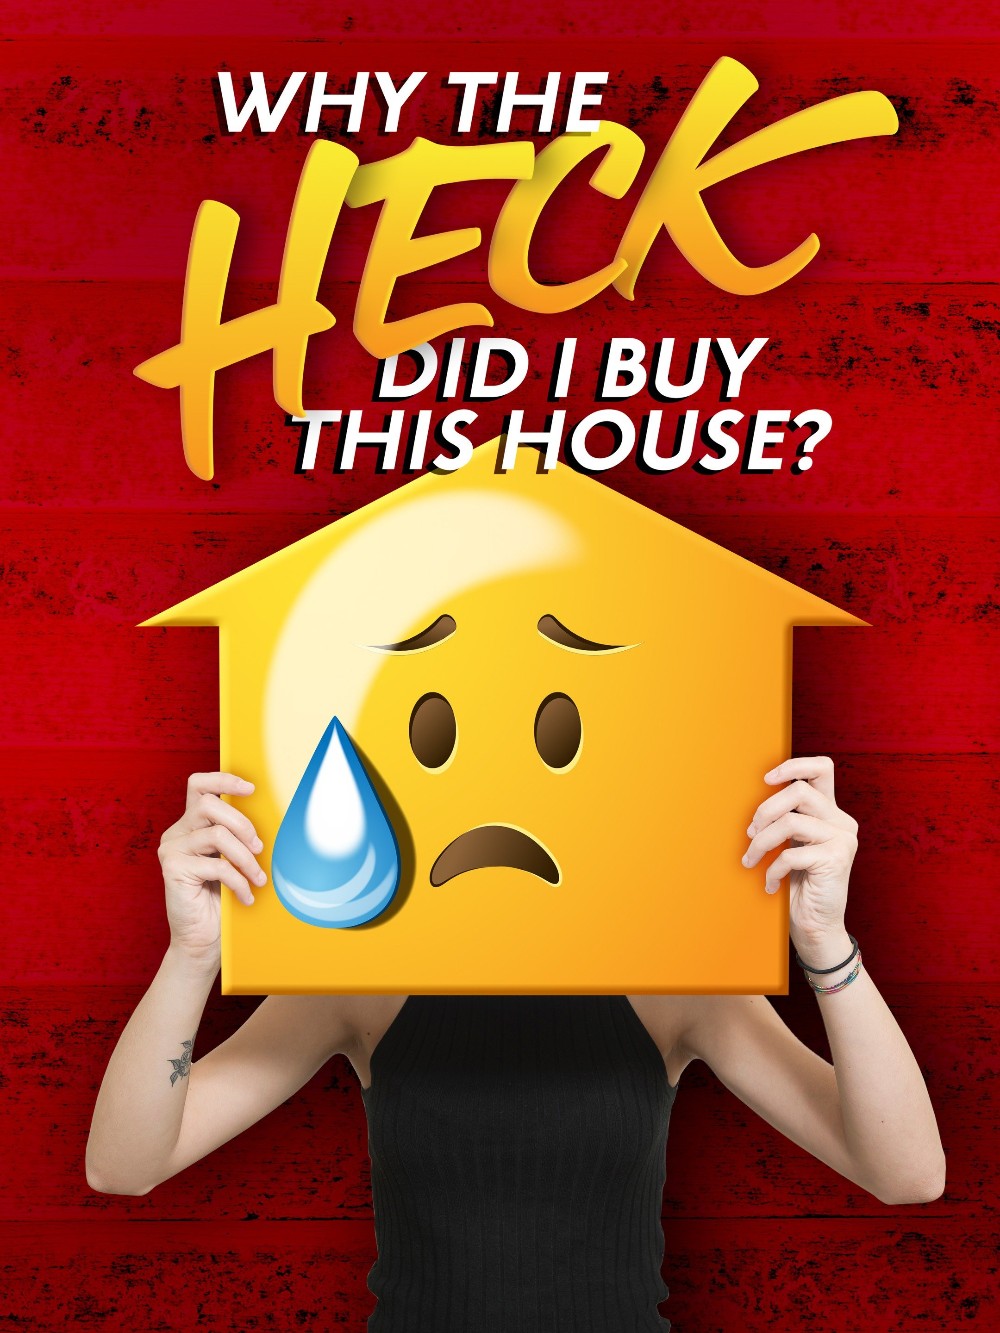 Why the Heck Did I Buy This House S02E02 [1080p] (x265) 230242caa087887cb4264dfff869f66c